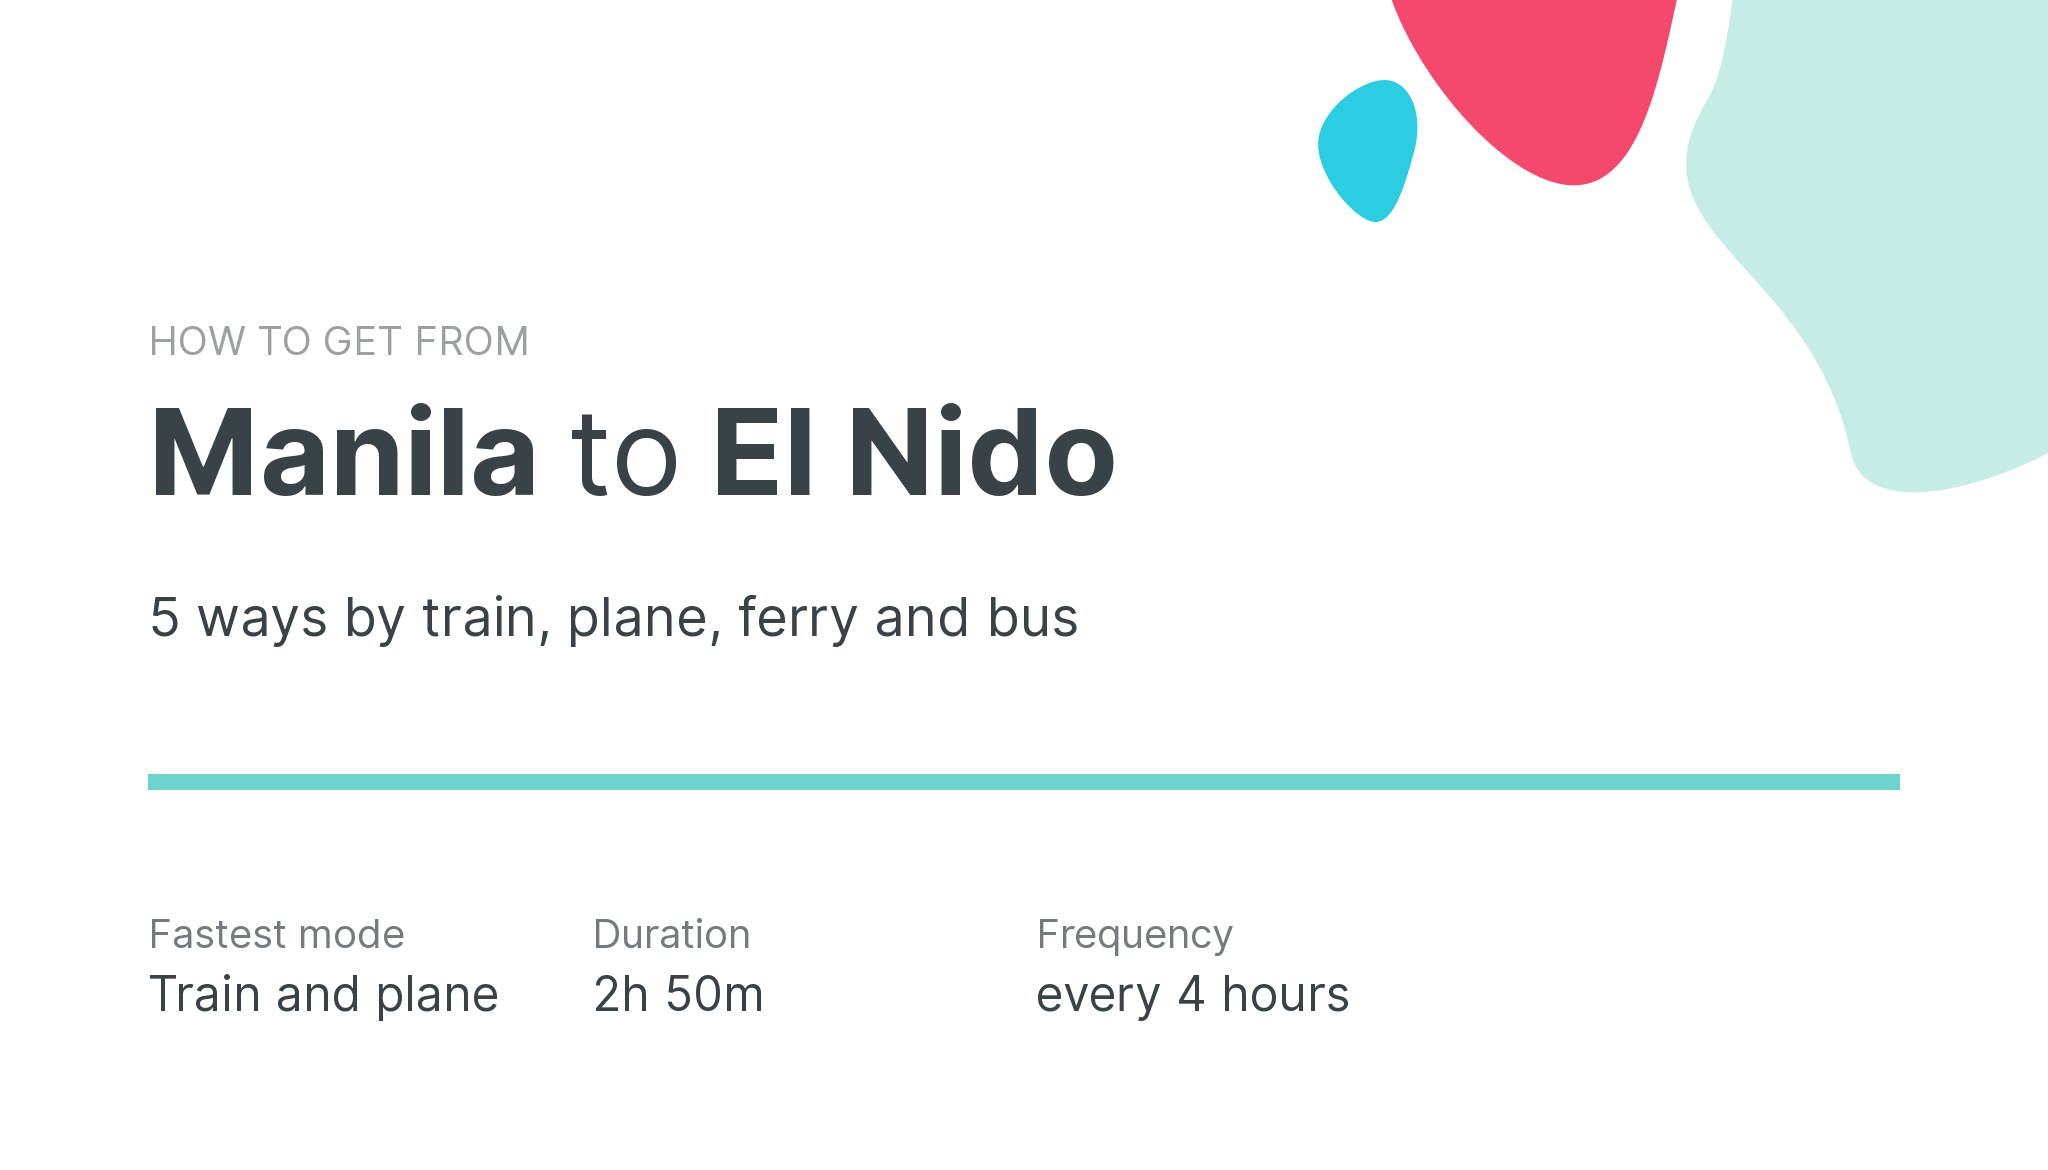 How do I get from Manila to El Nido